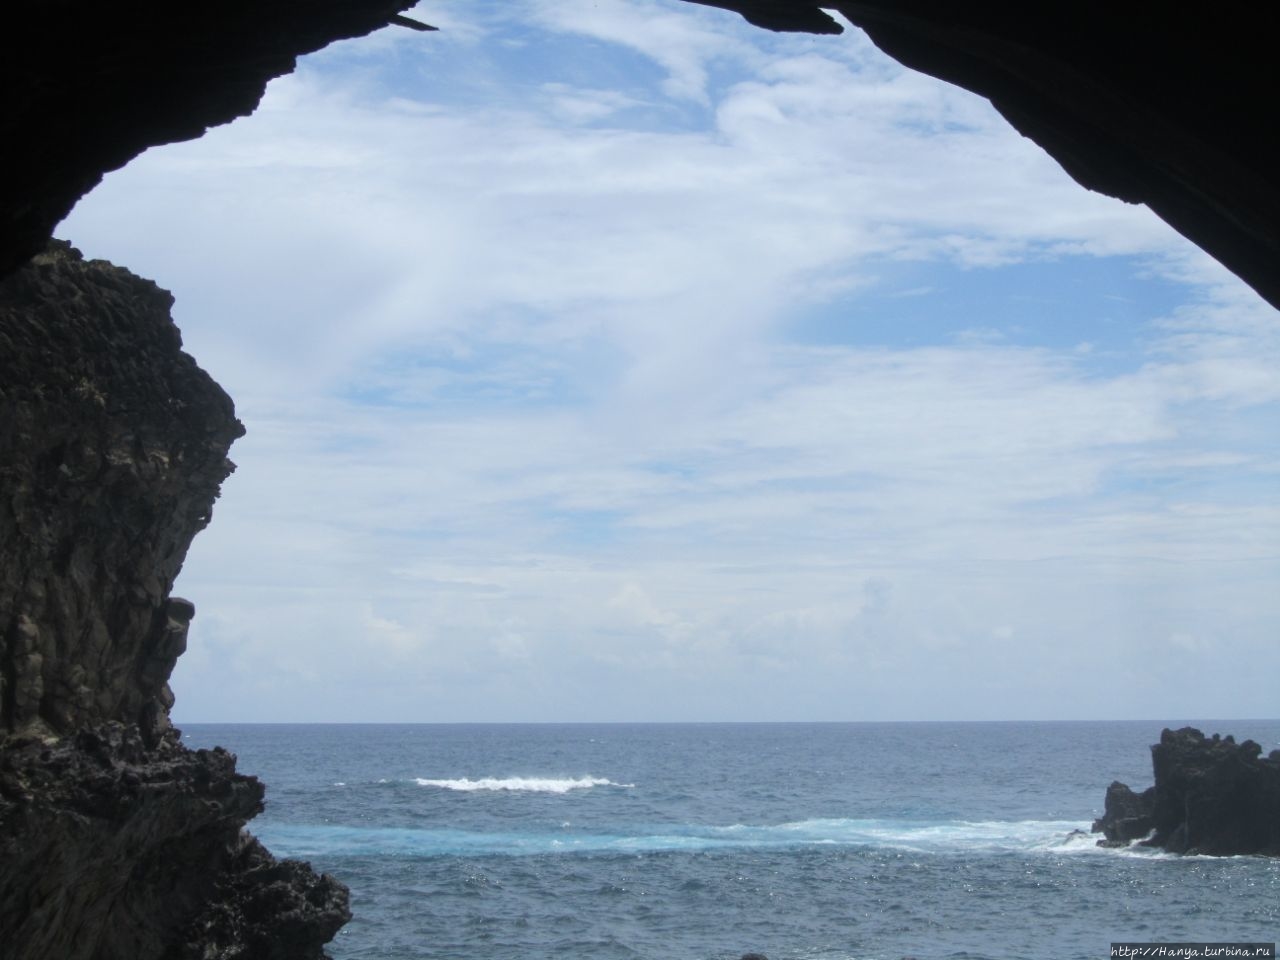 Запутанное имя и прошлое пещеры Ana Kai Tangata. Ч.60